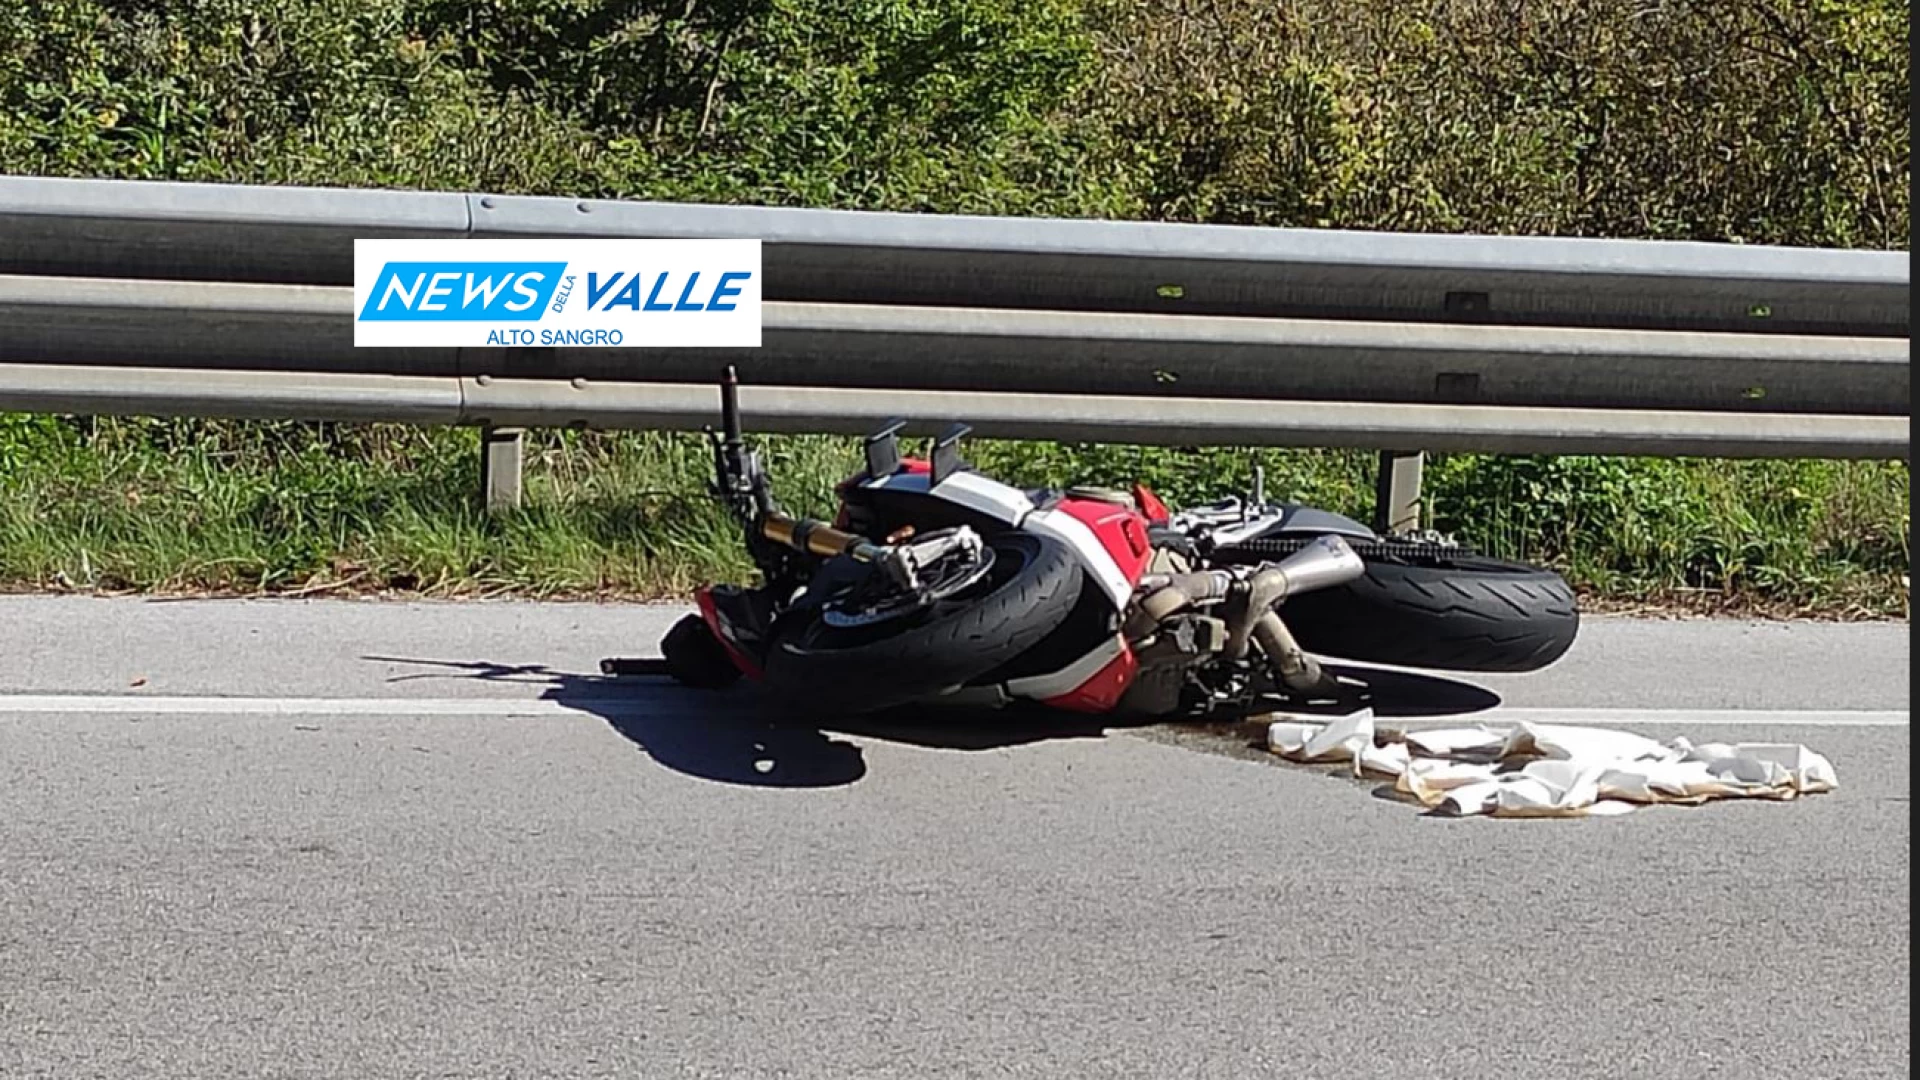 Colli a Volturno: motociclista cade a terra violentemente sulla statale 158. Fortunatamente non è grave. Sul posto il 118 ed i Carabinieri.